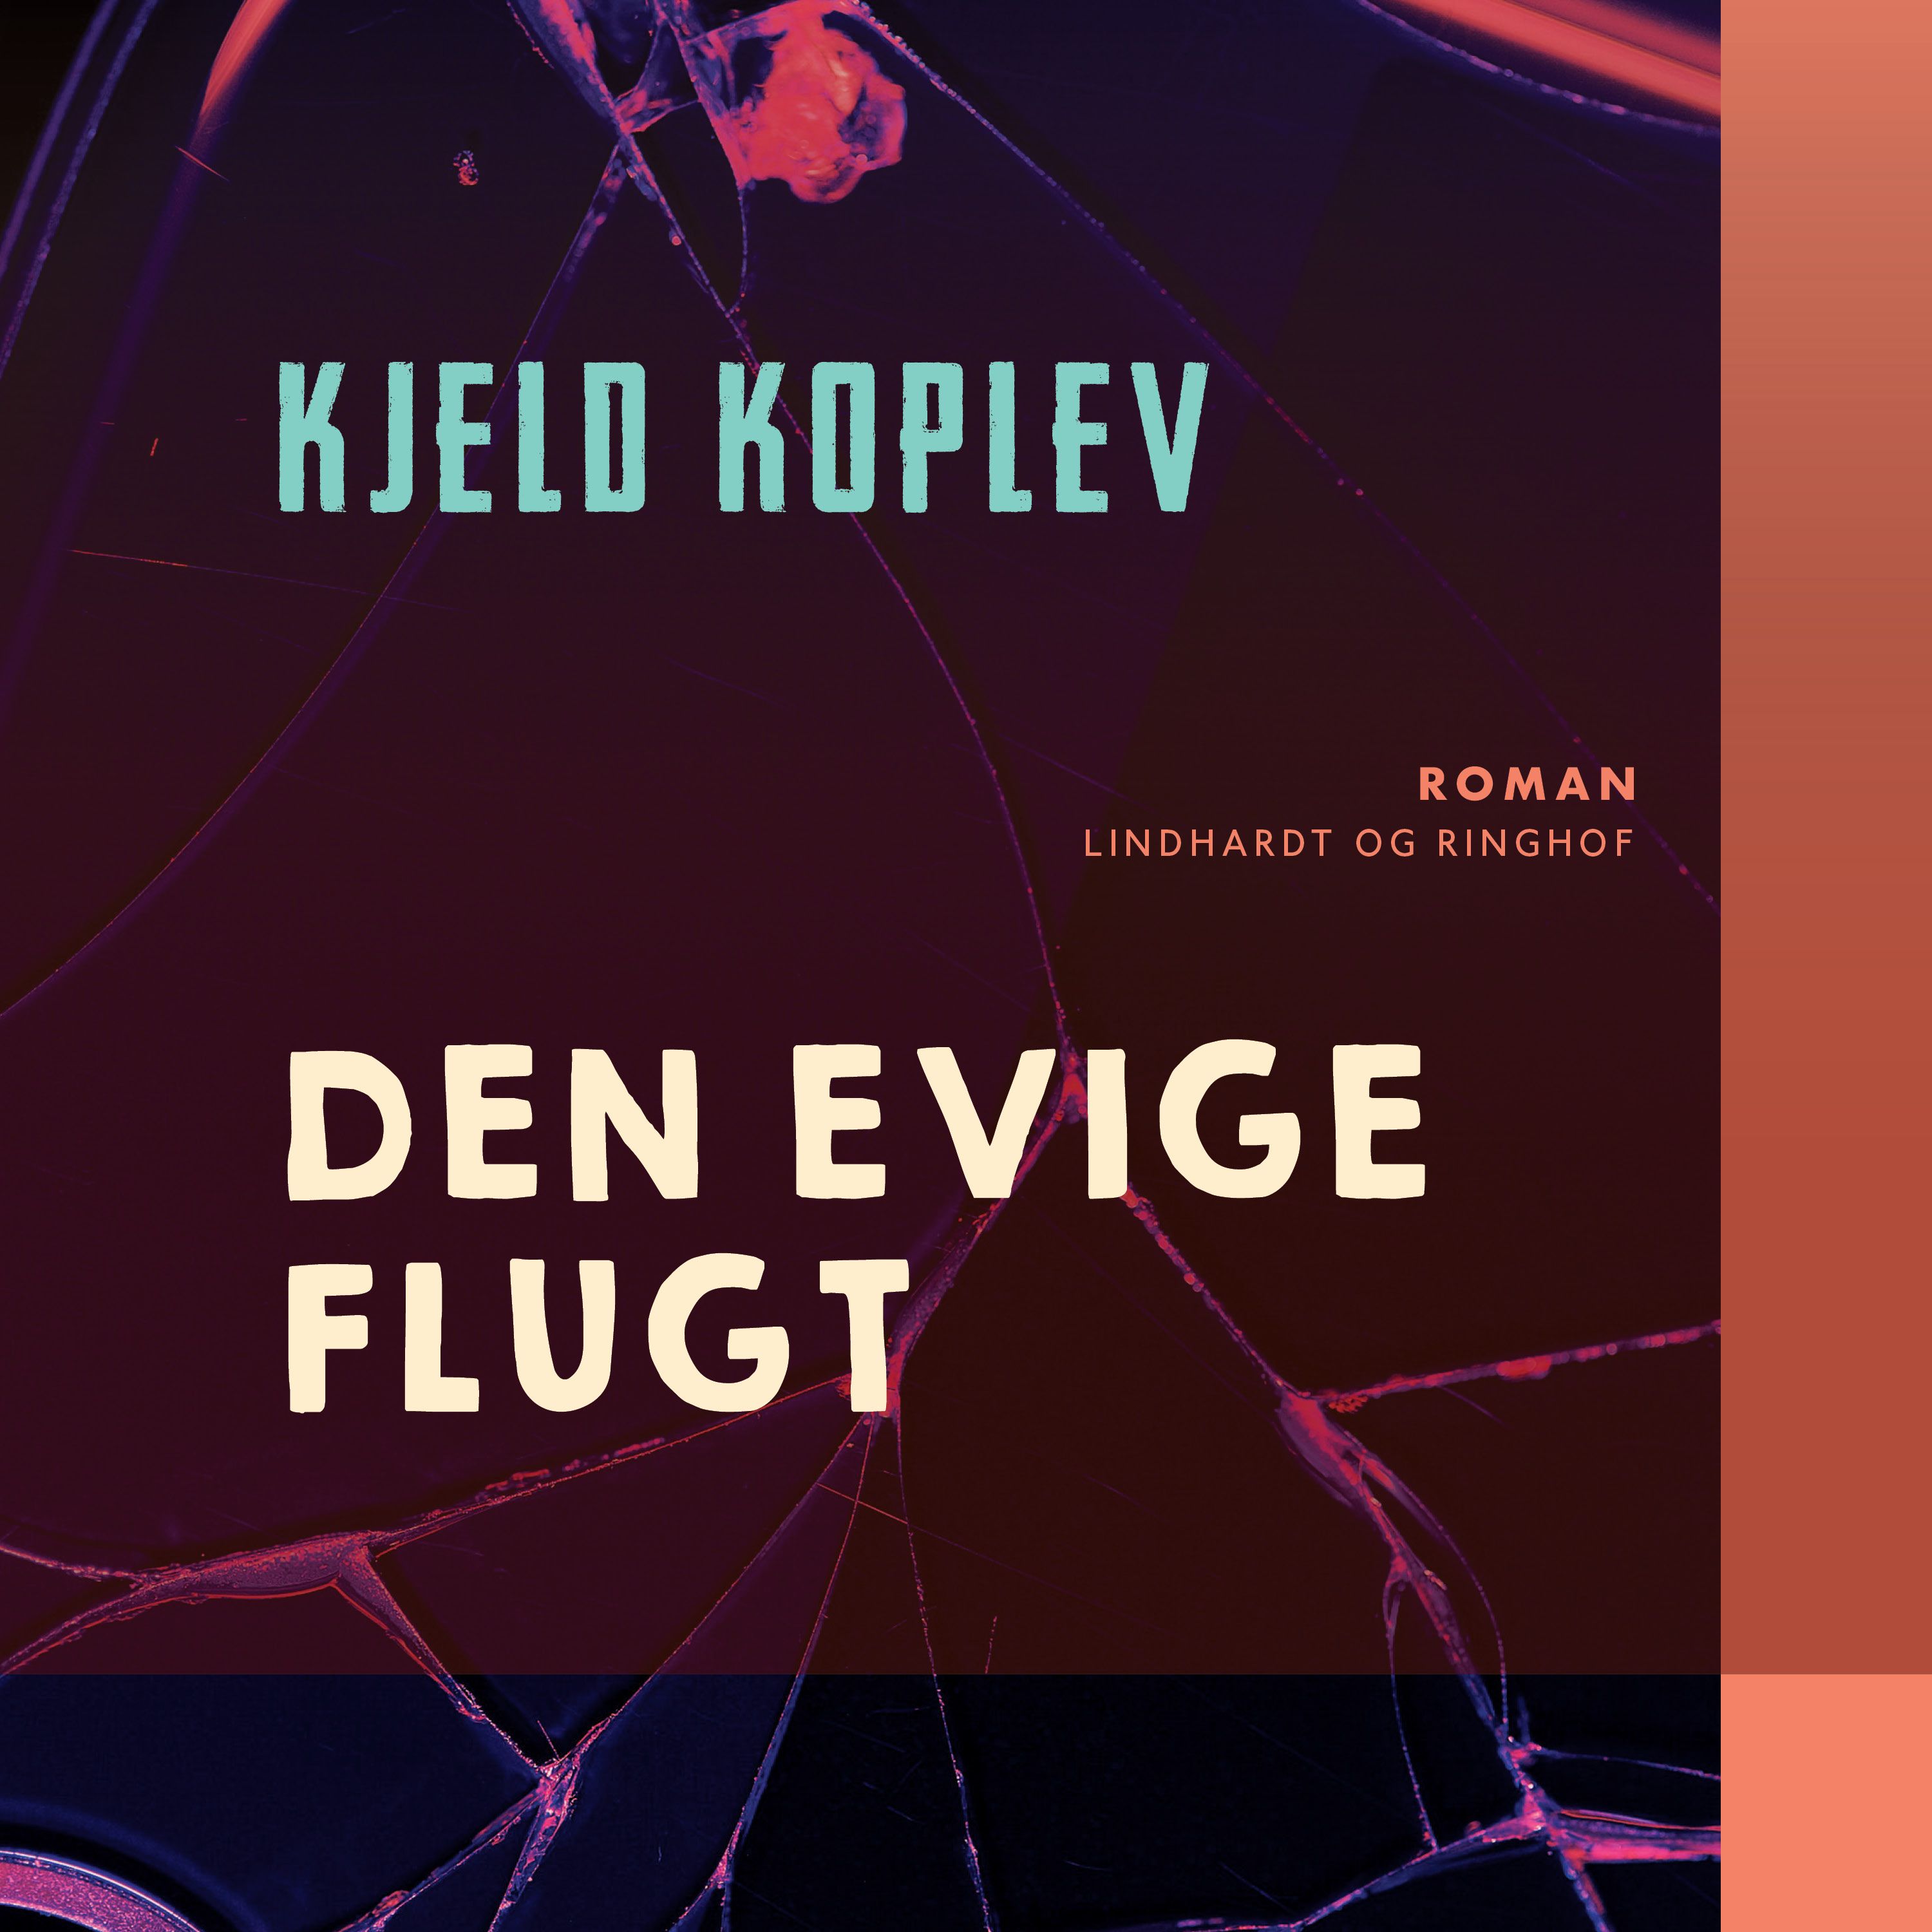 Den evige flugt, ljudbok av Kjeld Koplev